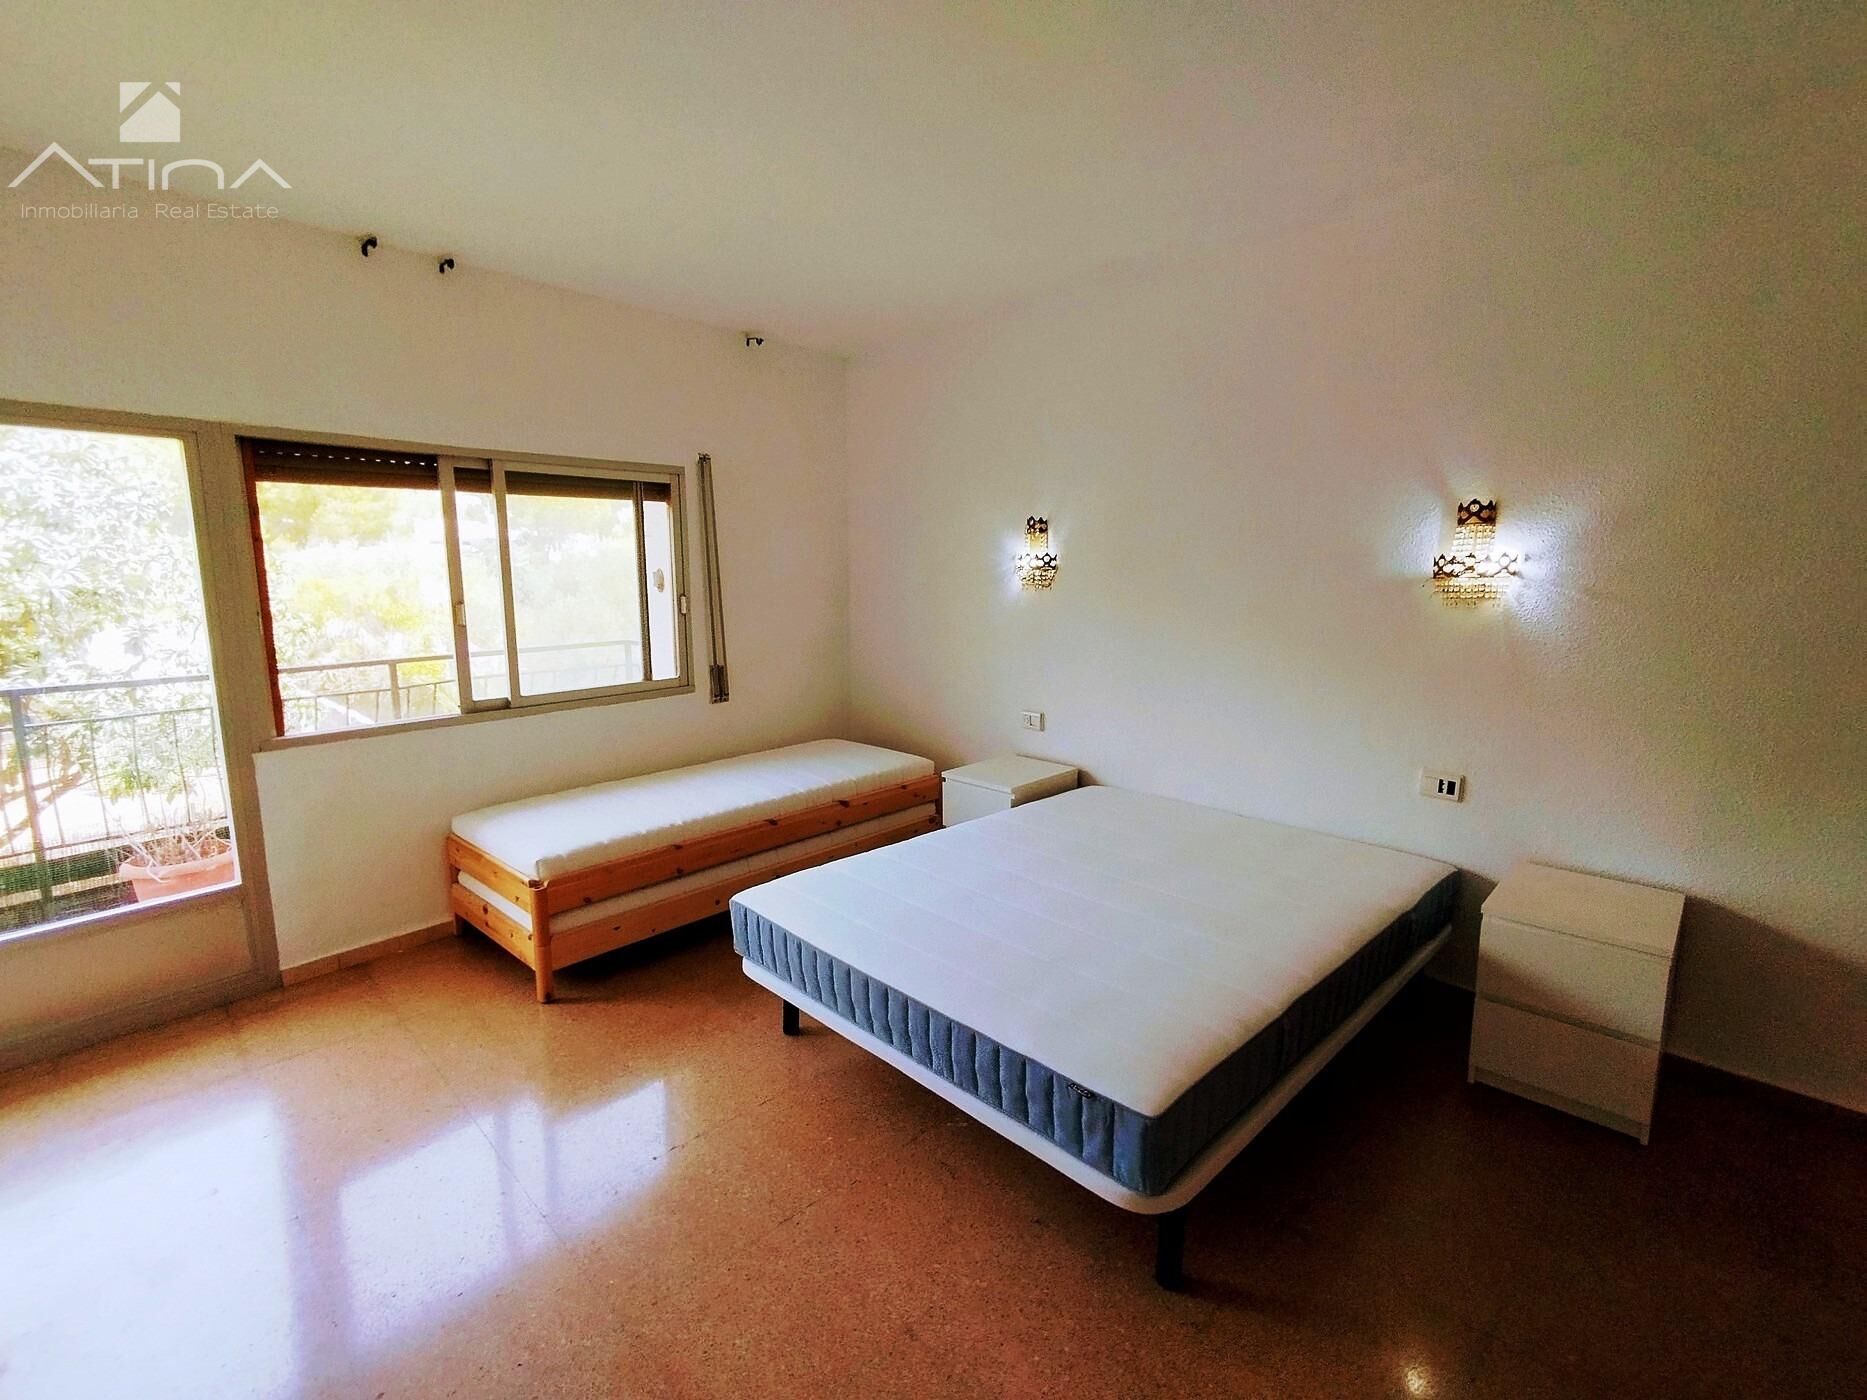 Apartamento de 3 dormitorios en venta  entre el pueblo y el Puerto de Javea.